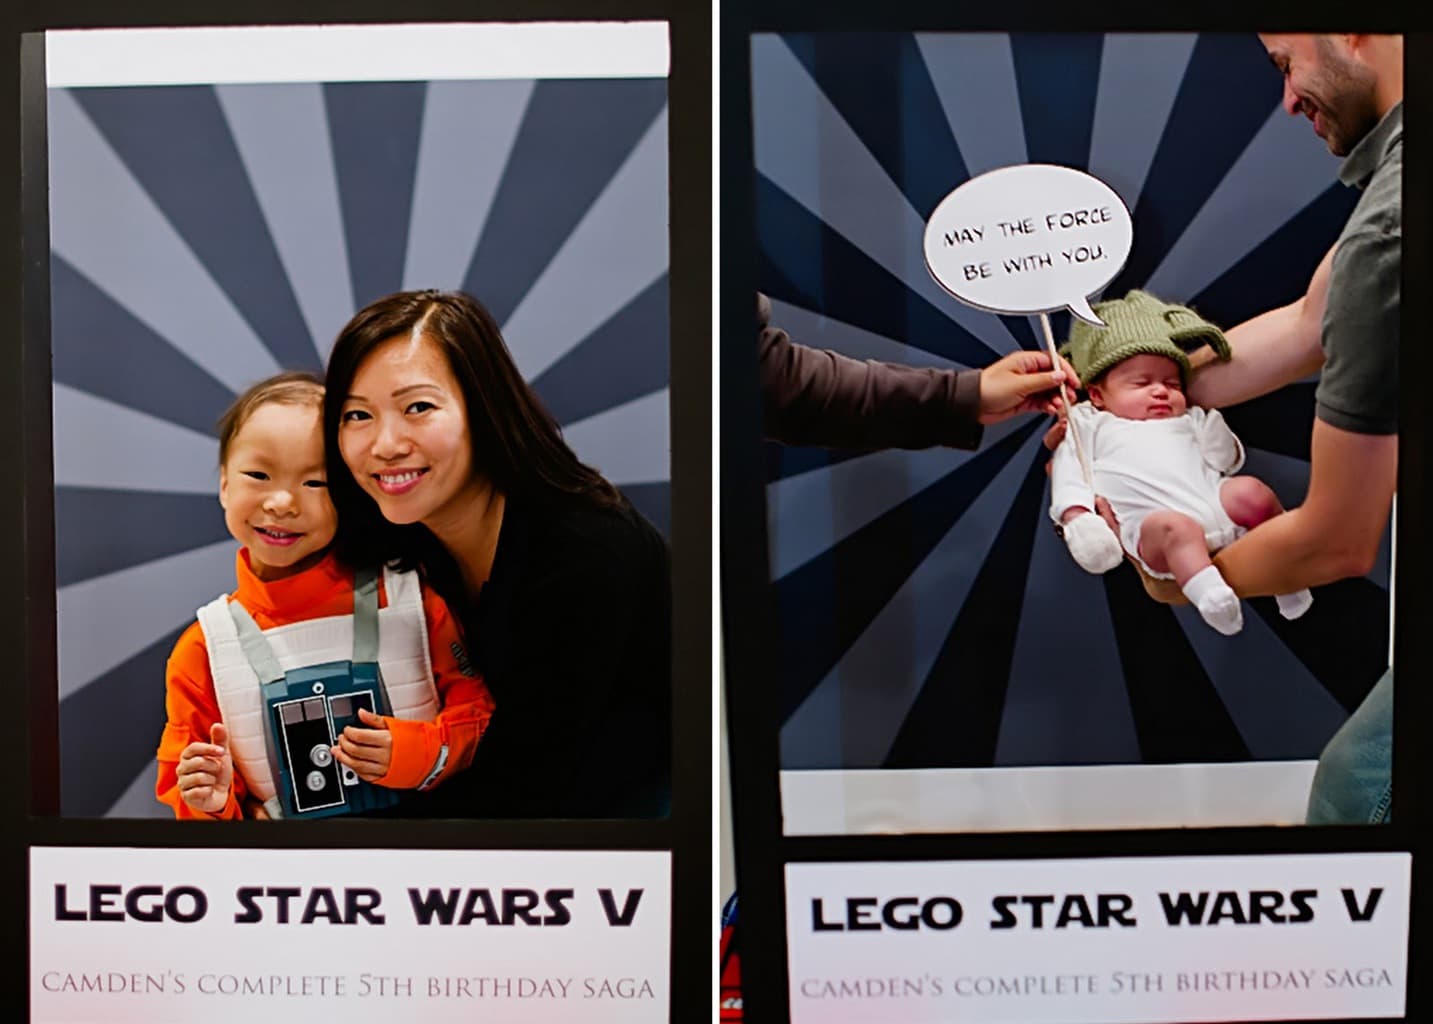 Star Wars LEGO birthday party ideas